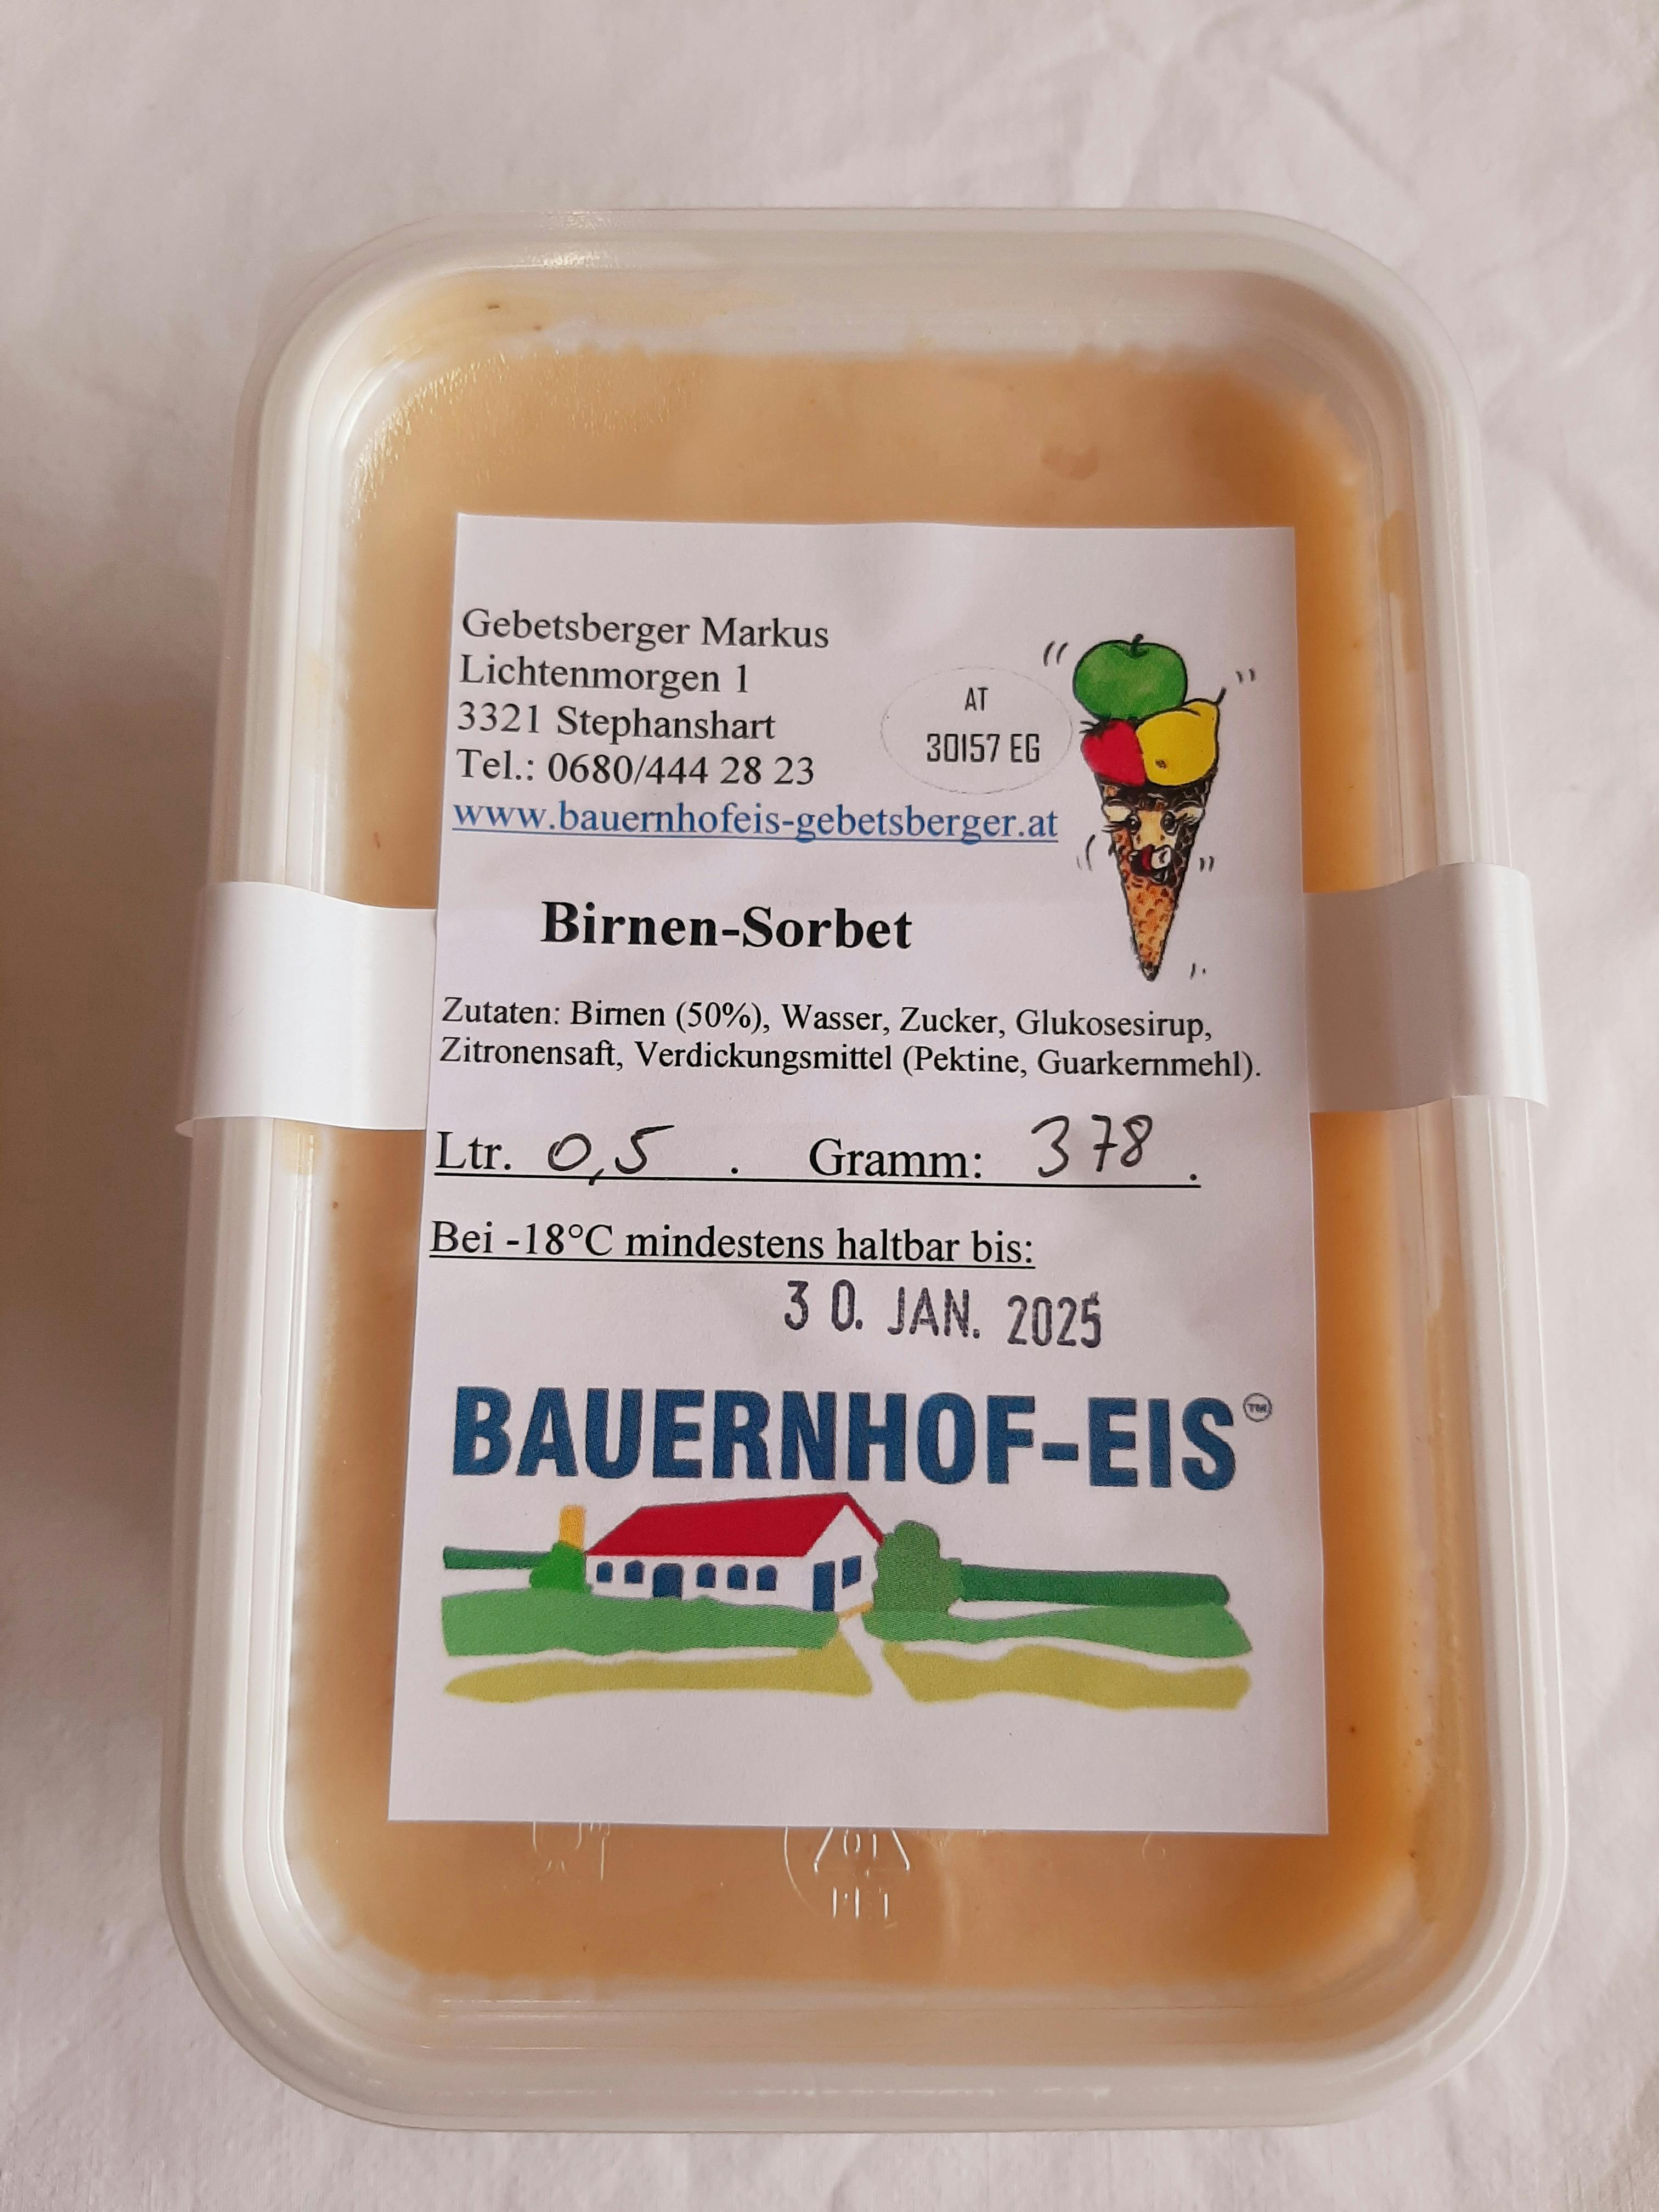 Bauernhofeis - Birnensorbet